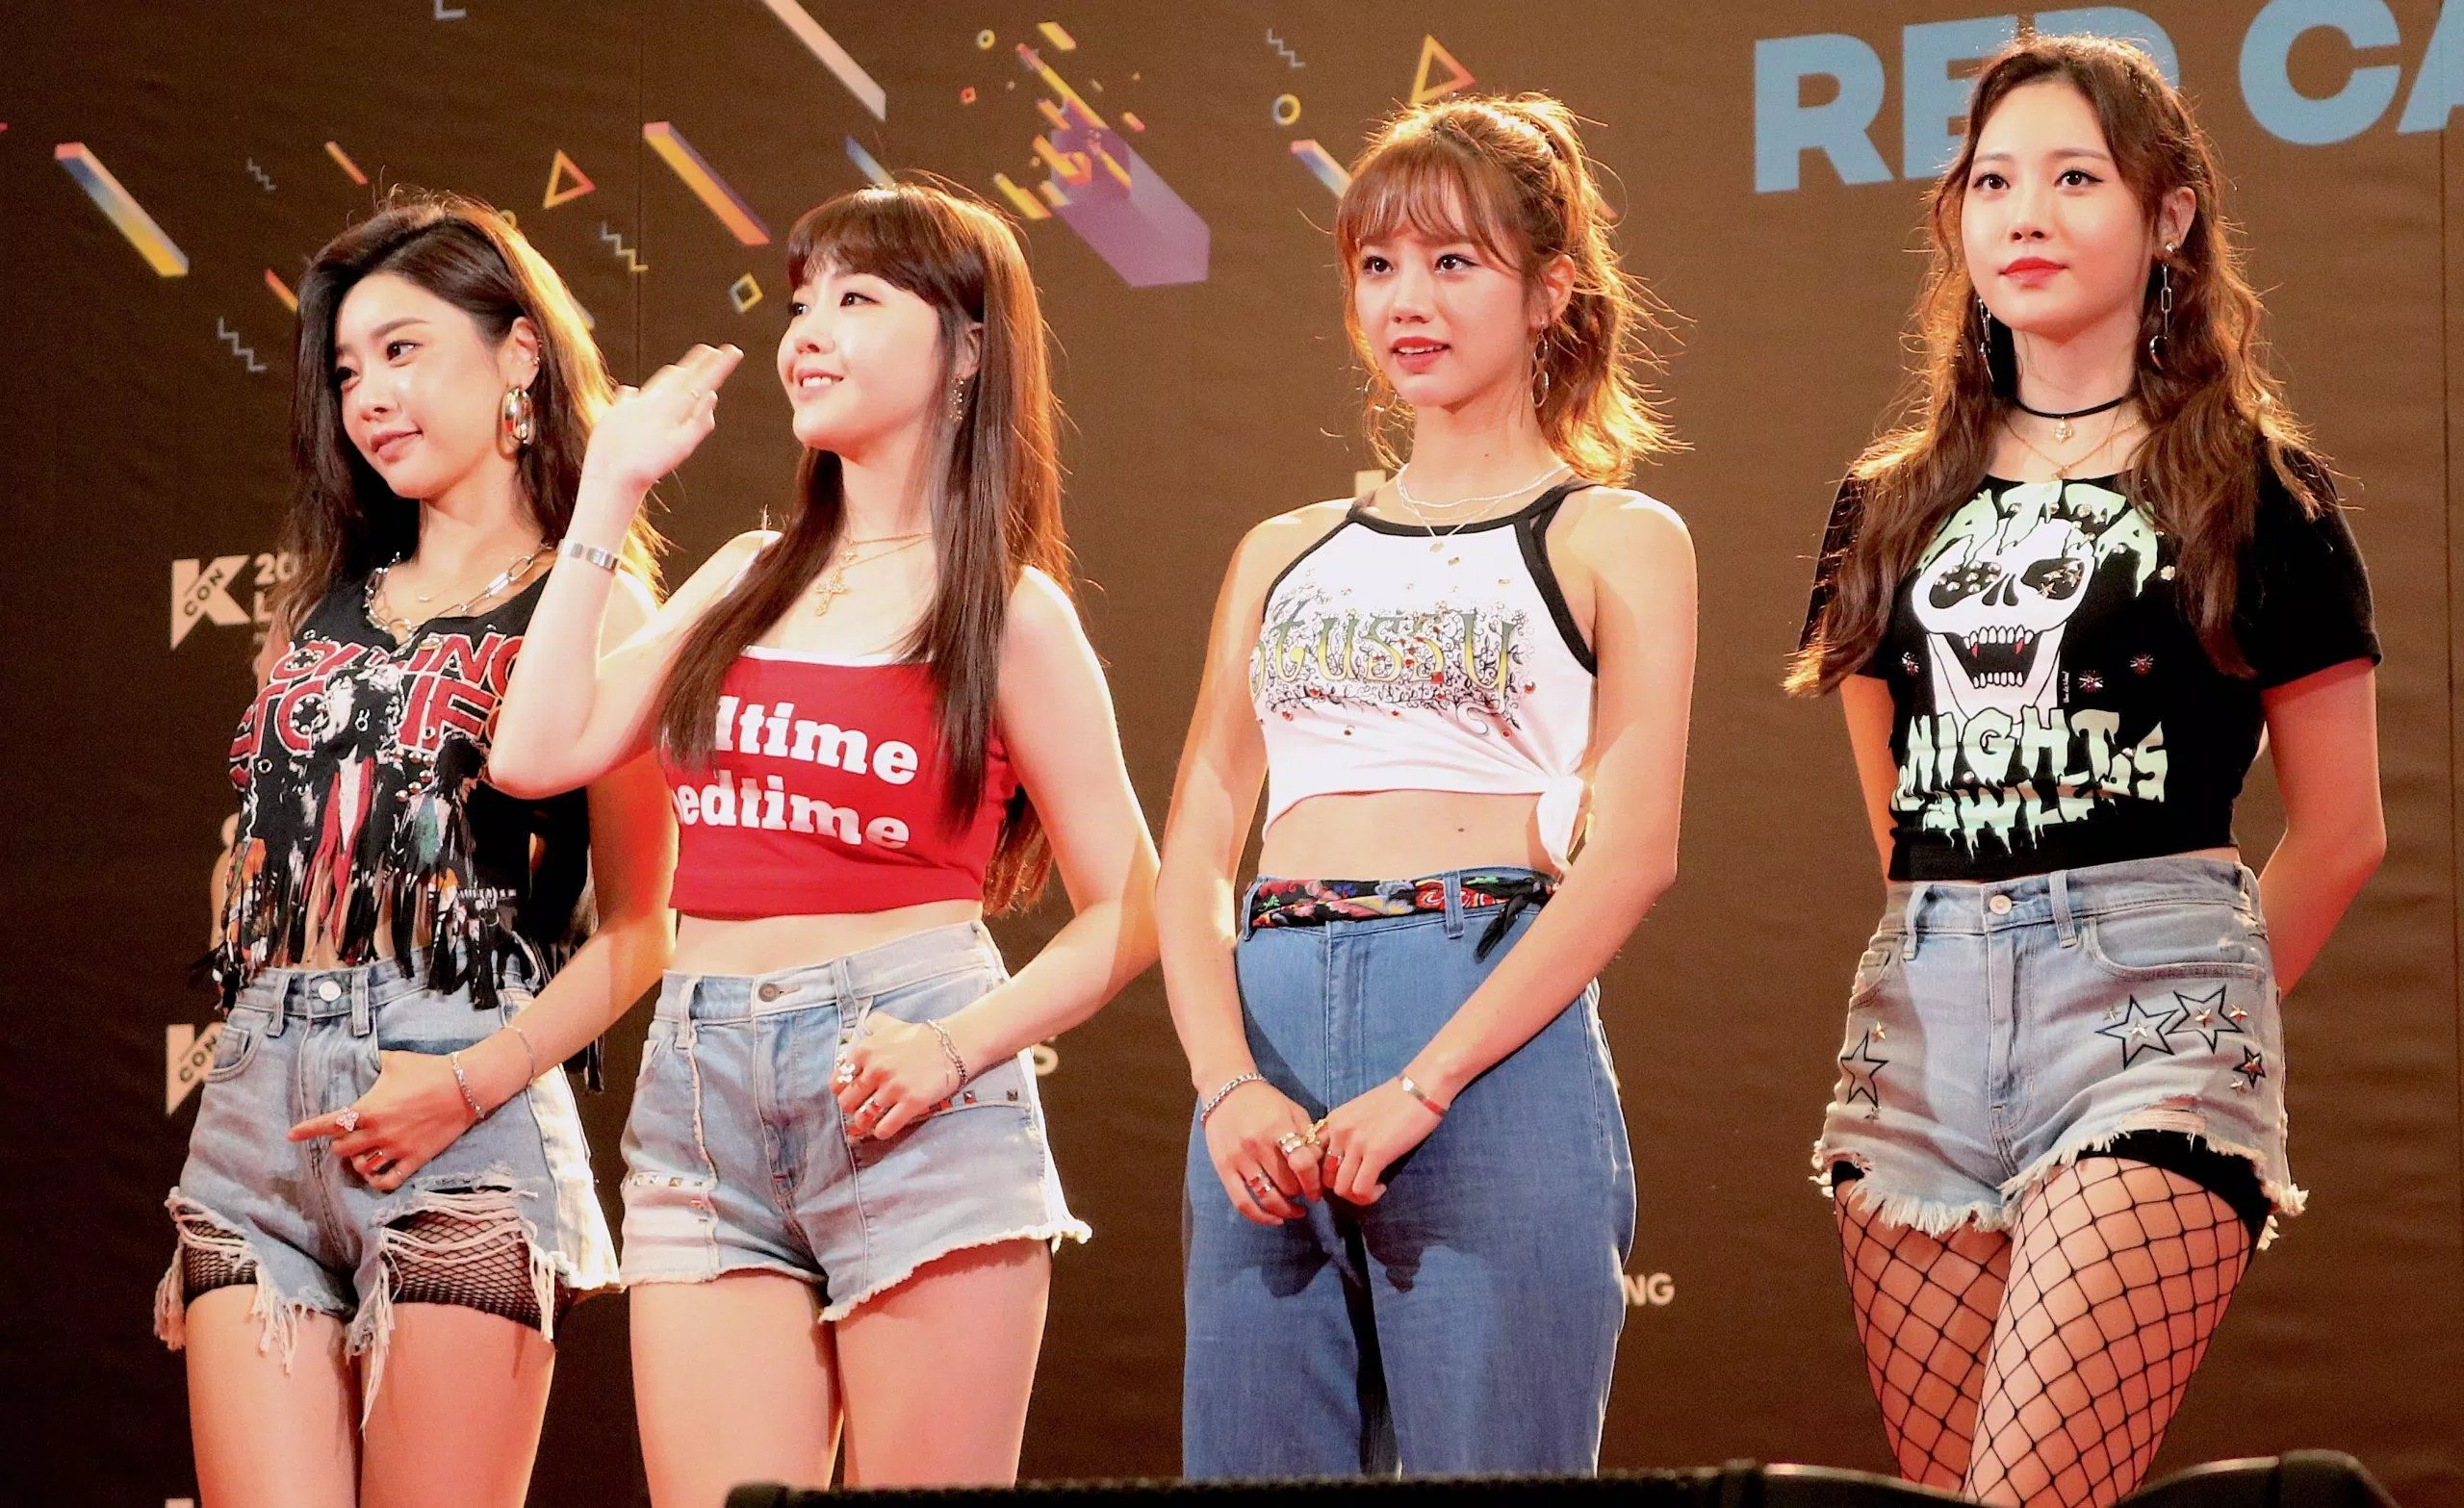 5 nhóm nhạc Kpop nổi tiếng hơn sau khi thay đổi concept AOA BTS Dreamcatcher Girls Day Golden Child KPOP nhạc Kpop nhóm nhạc nhóm nhạc KPOP nổi tiếng thay đổi